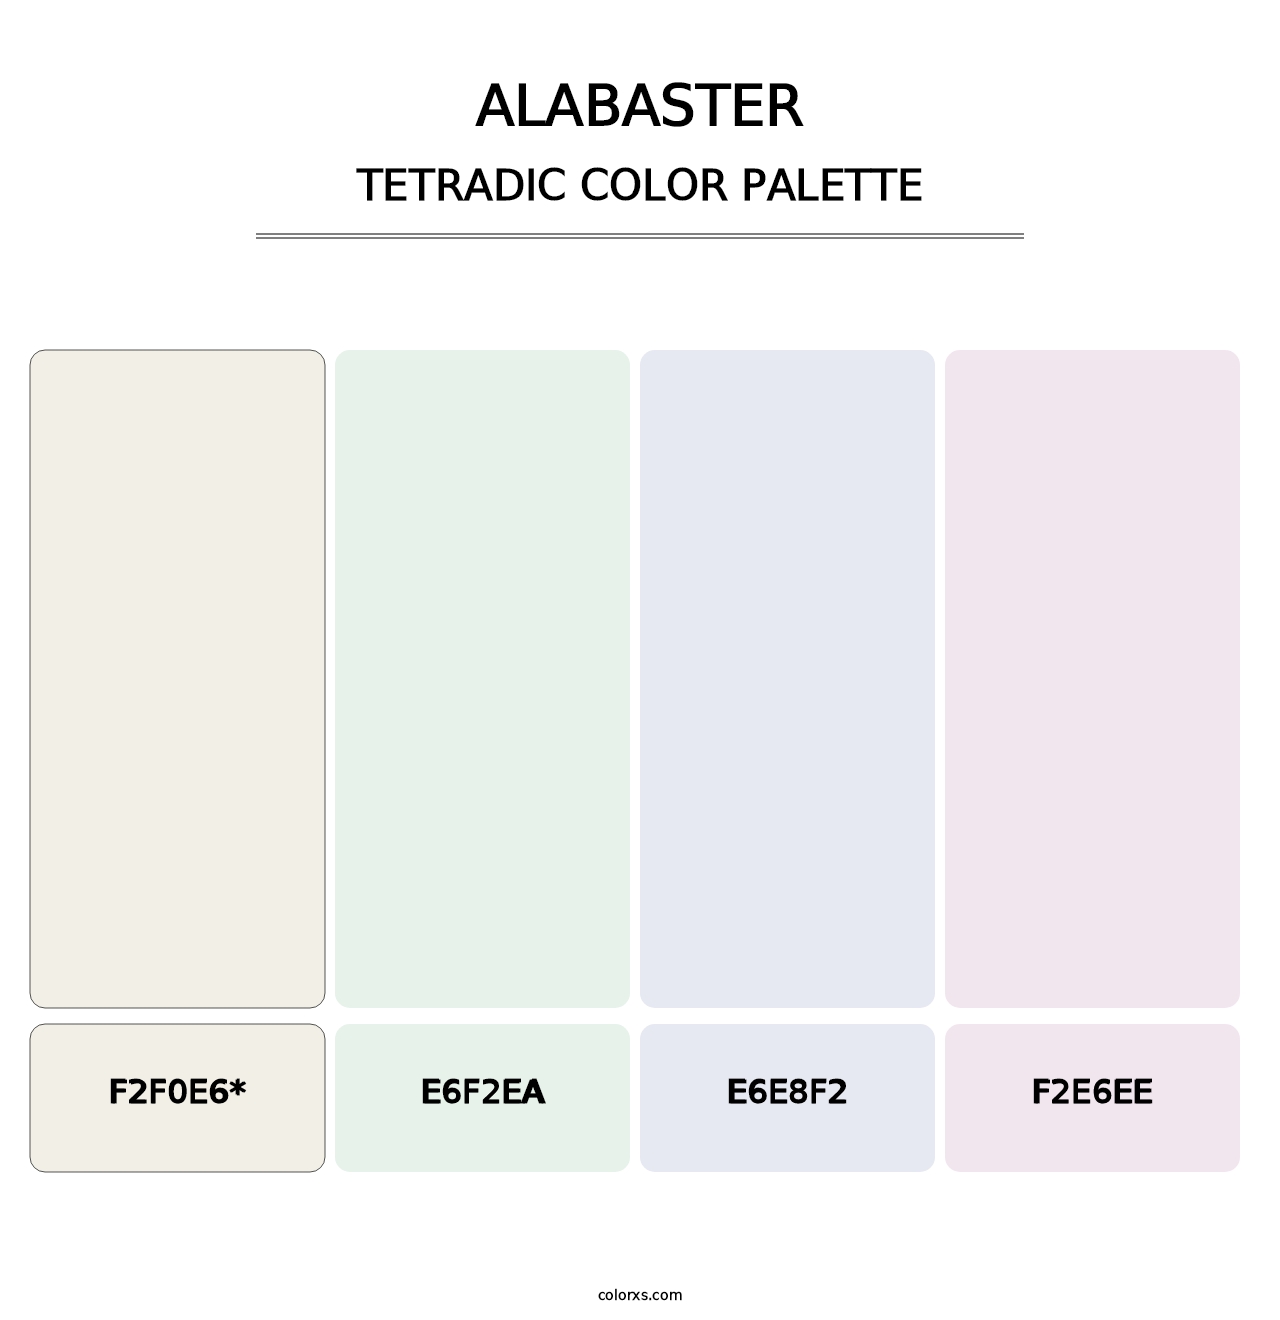 Alabaster - Tetradic Color Palette